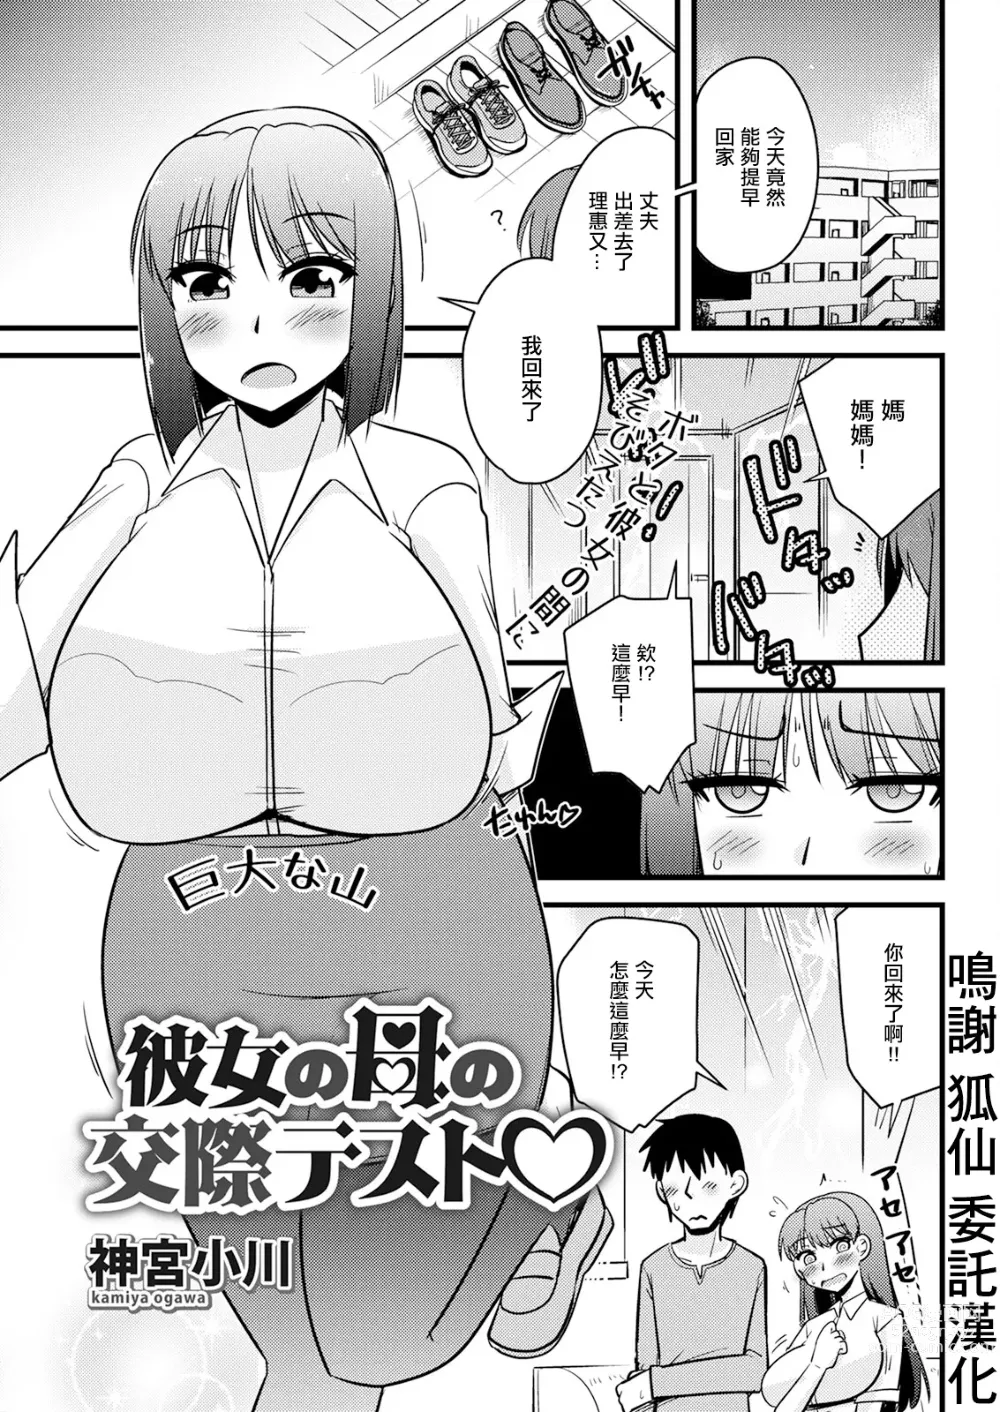 Page 1 of manga Kanojo no Haha no Kousai Test